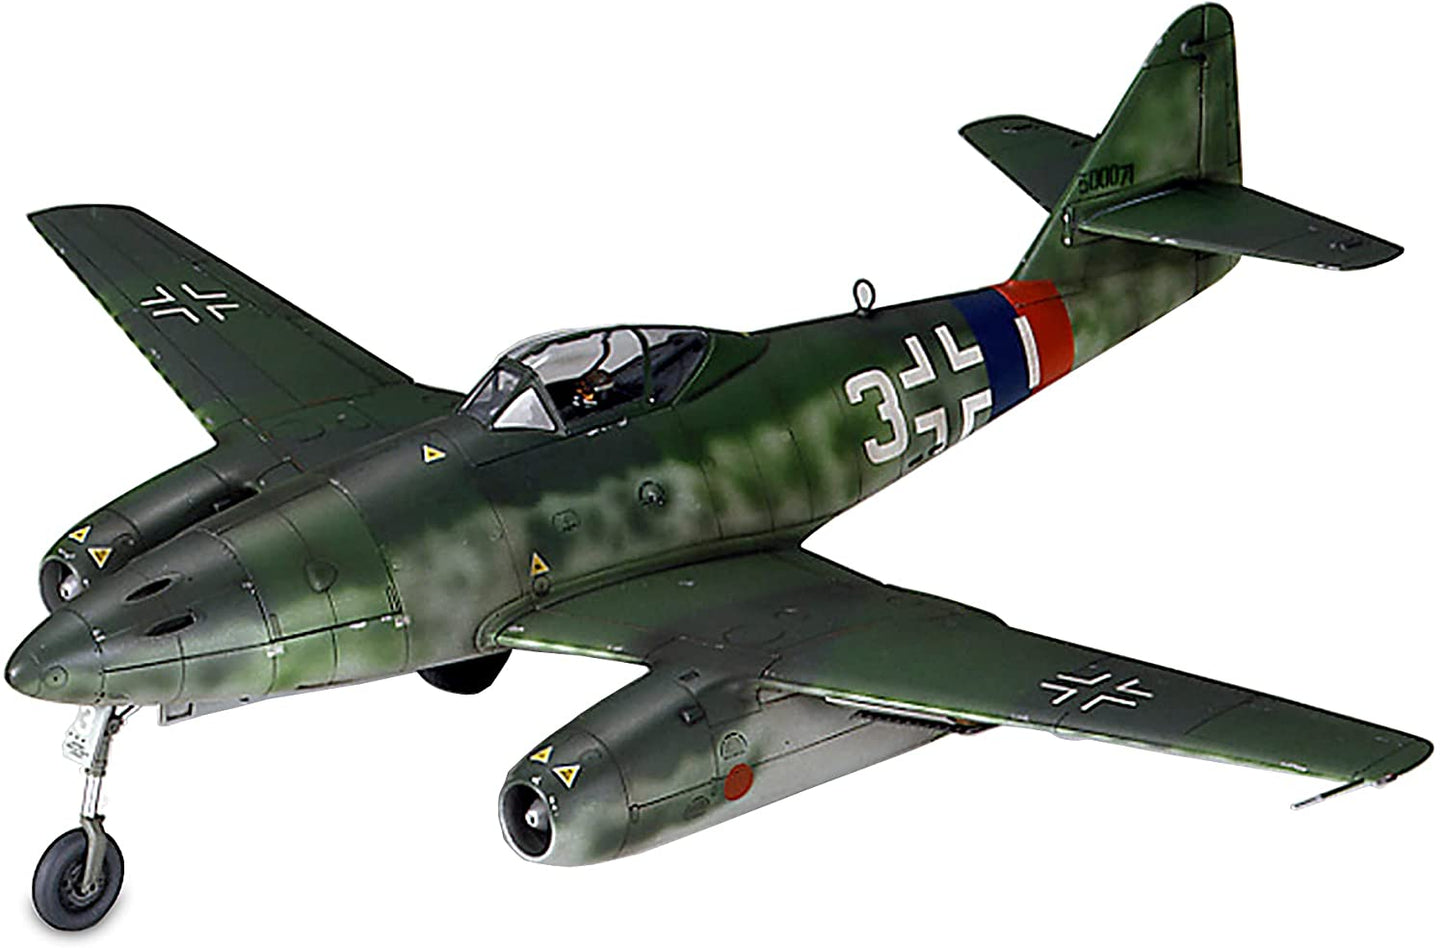 Tamiya Models Messerschmitt Me 262A-1a Model Kit